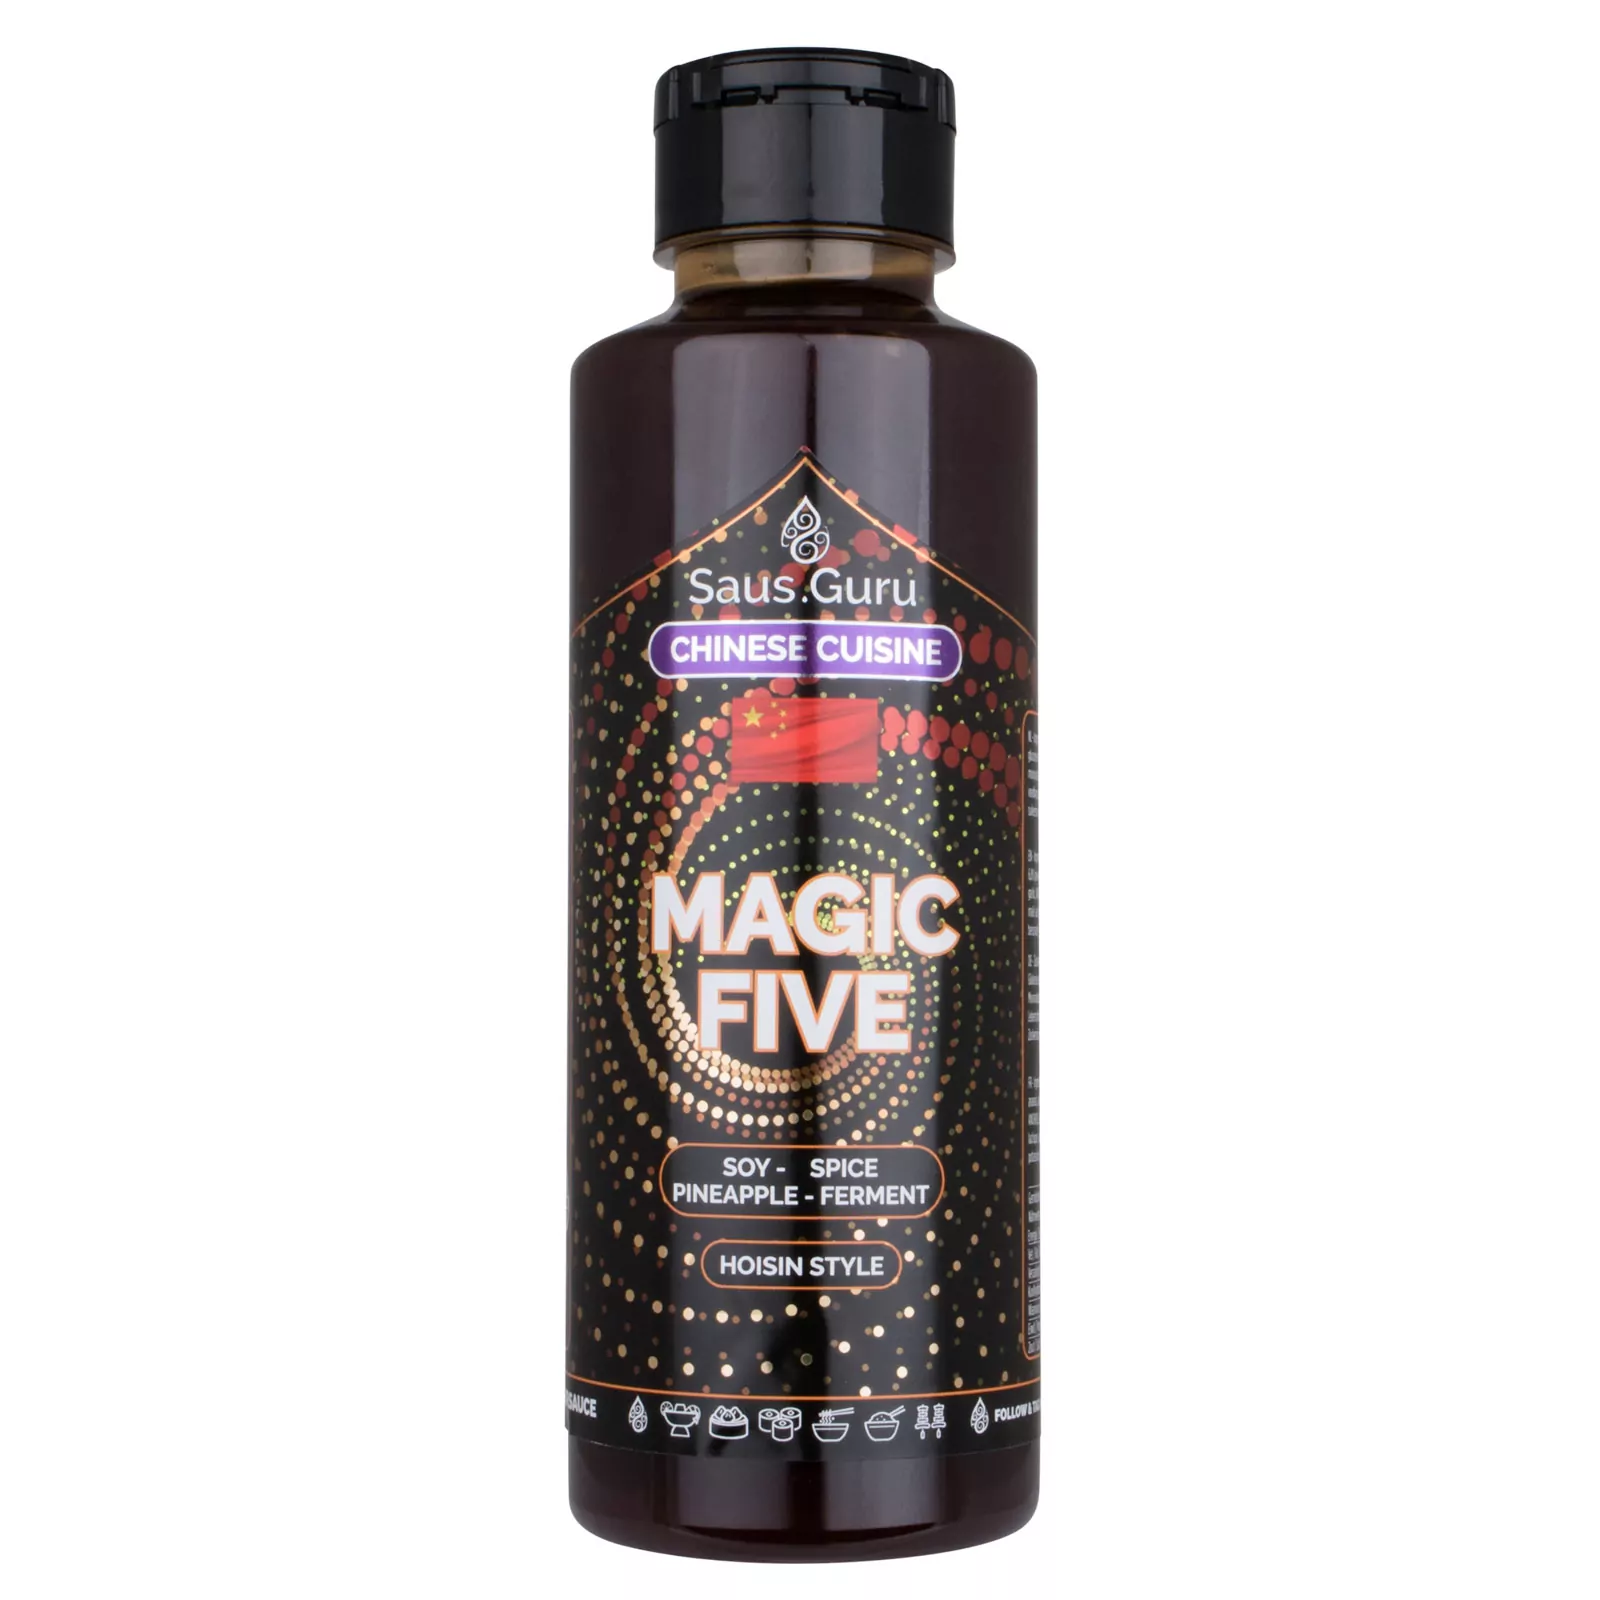 Saus.Guru Magic Five - Asian Sauce 0,5L